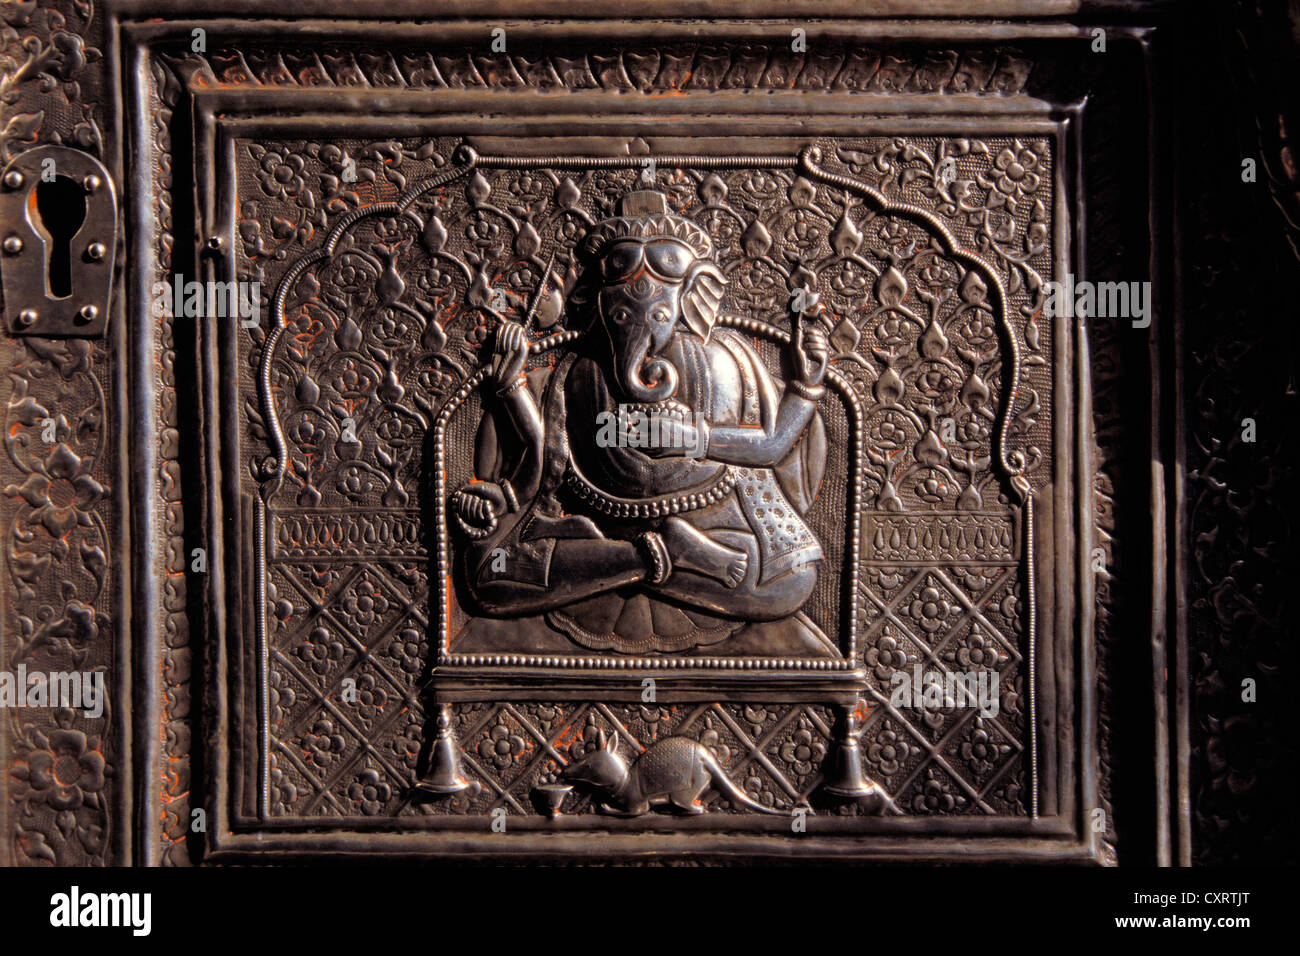 Secours d'argent, dieu à tête d'éléphant Ganesha avec sa monture, le rat, le temple Karni Mata, Deshnook ou Deshnok temple des Rats, Rajasthan Banque D'Images